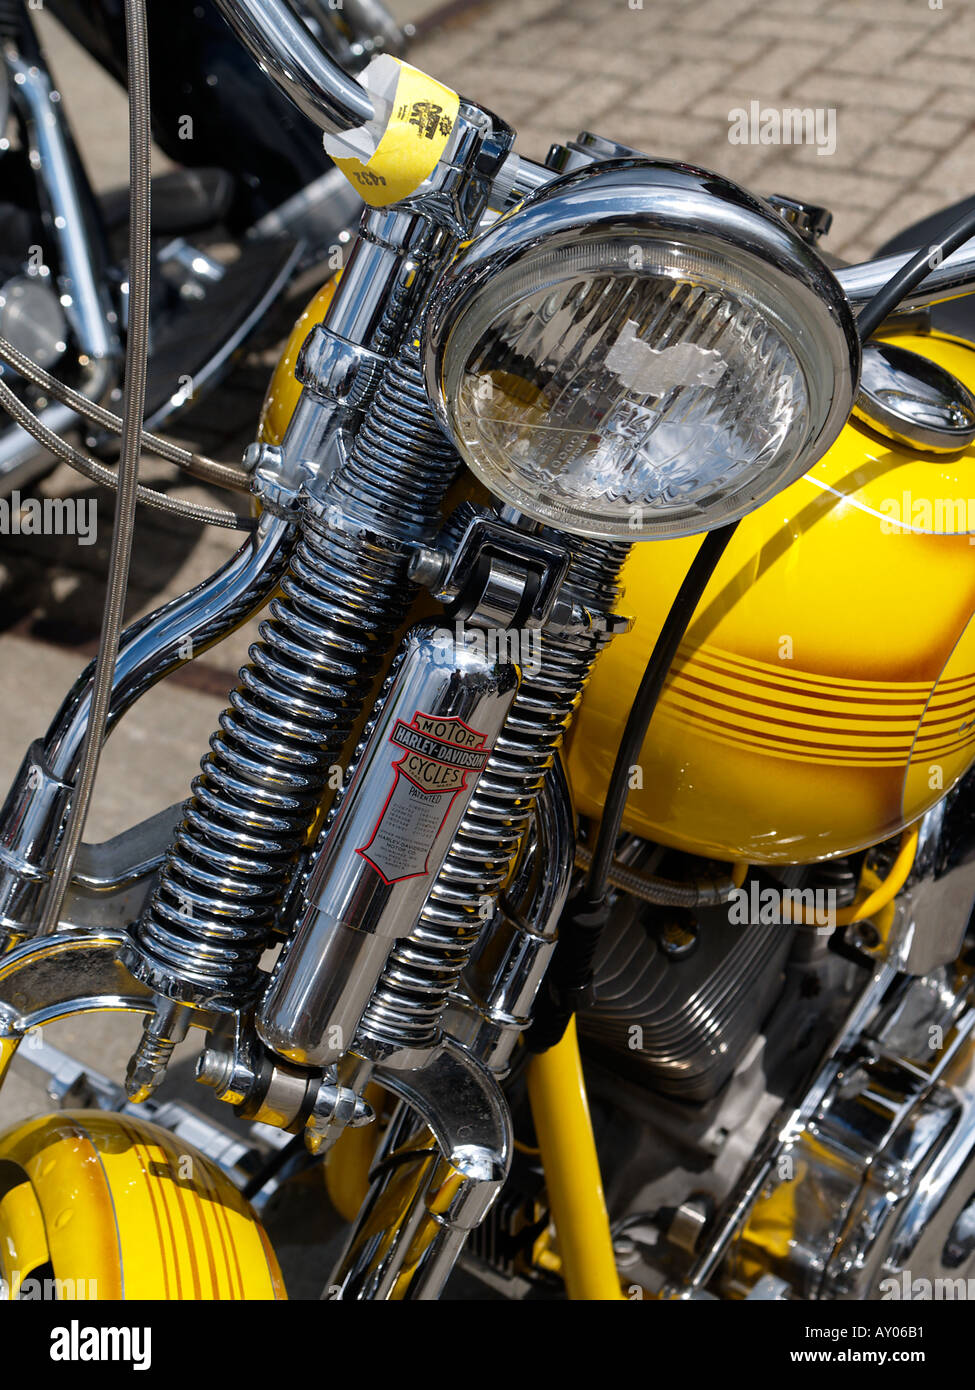 Harley Davidson Springer alten Stil Vorderradaufhängung mit Chrom-Federn  und Stoßdämpfer auf dem gelben Fahrrad Stockfotografie - Alamy